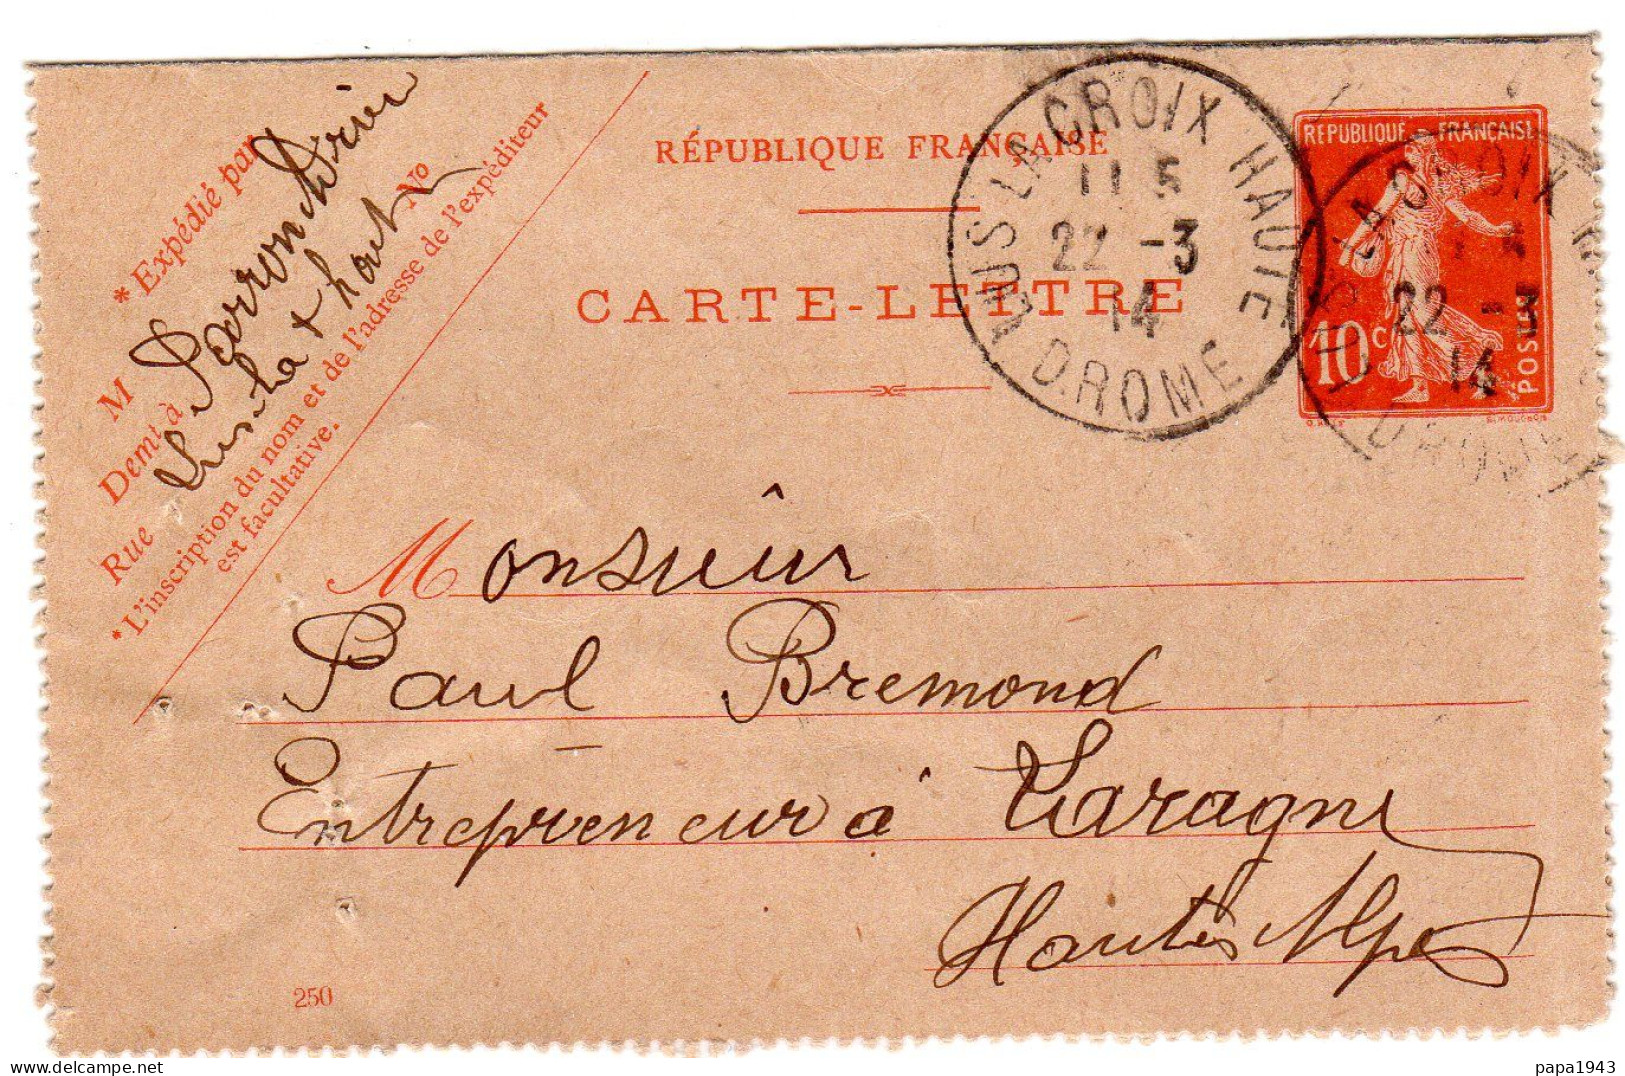 1914  CARTE LETTRE  CAD De LUS La CROIX HAUTE    Envoyé à LARAGNE 05 - Cartes-lettres